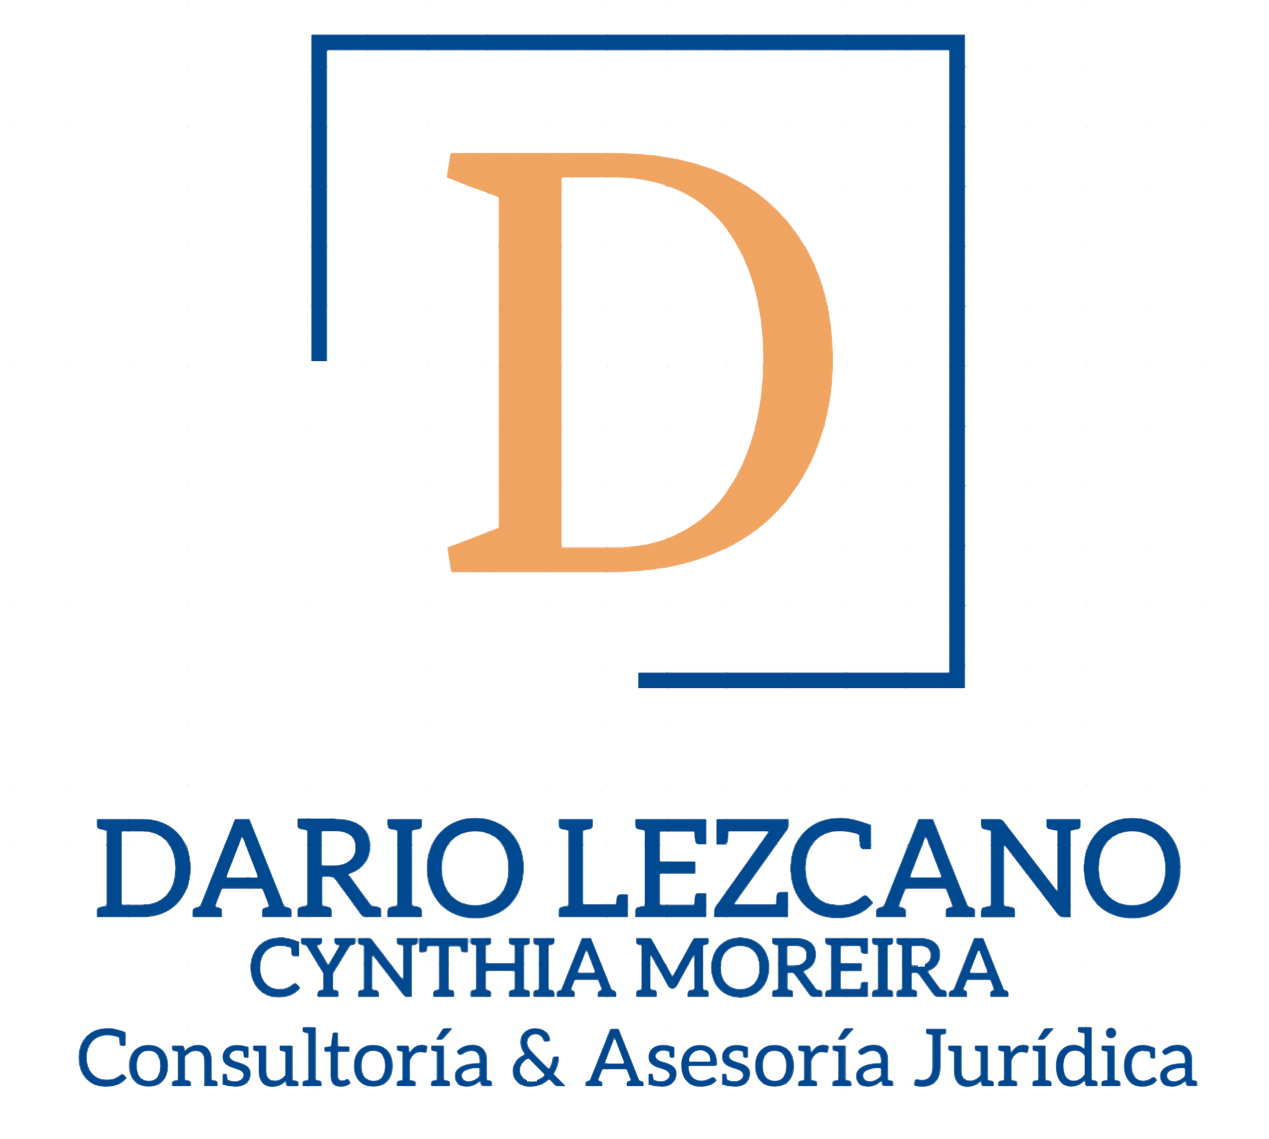 Dario Lezcano